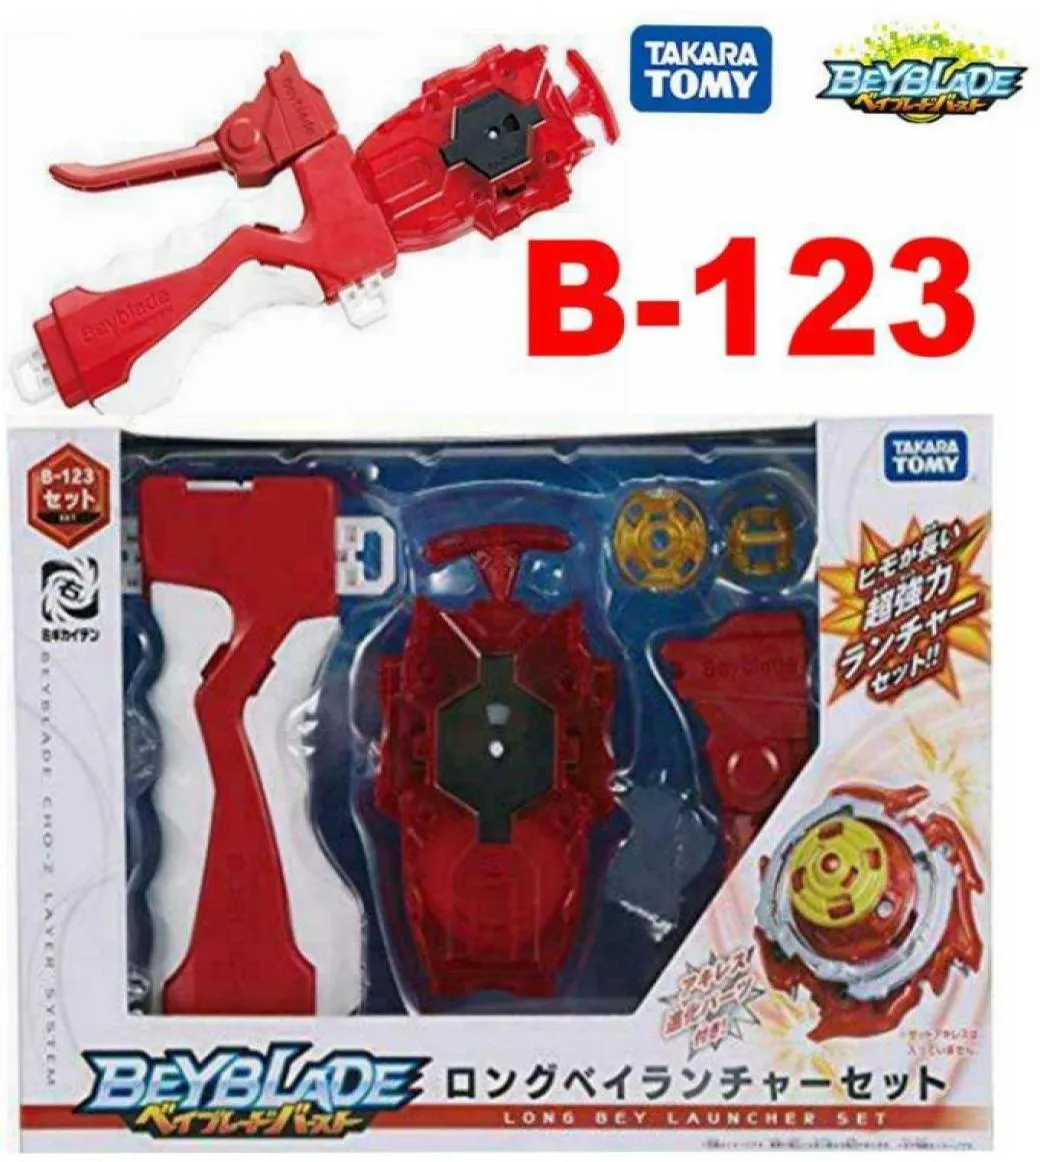 100 оригинальных игрушек Takara Tomy Beyblade BURST B123 Long Bey Launcher в качестве детских игрушек на день 039s X05281180790